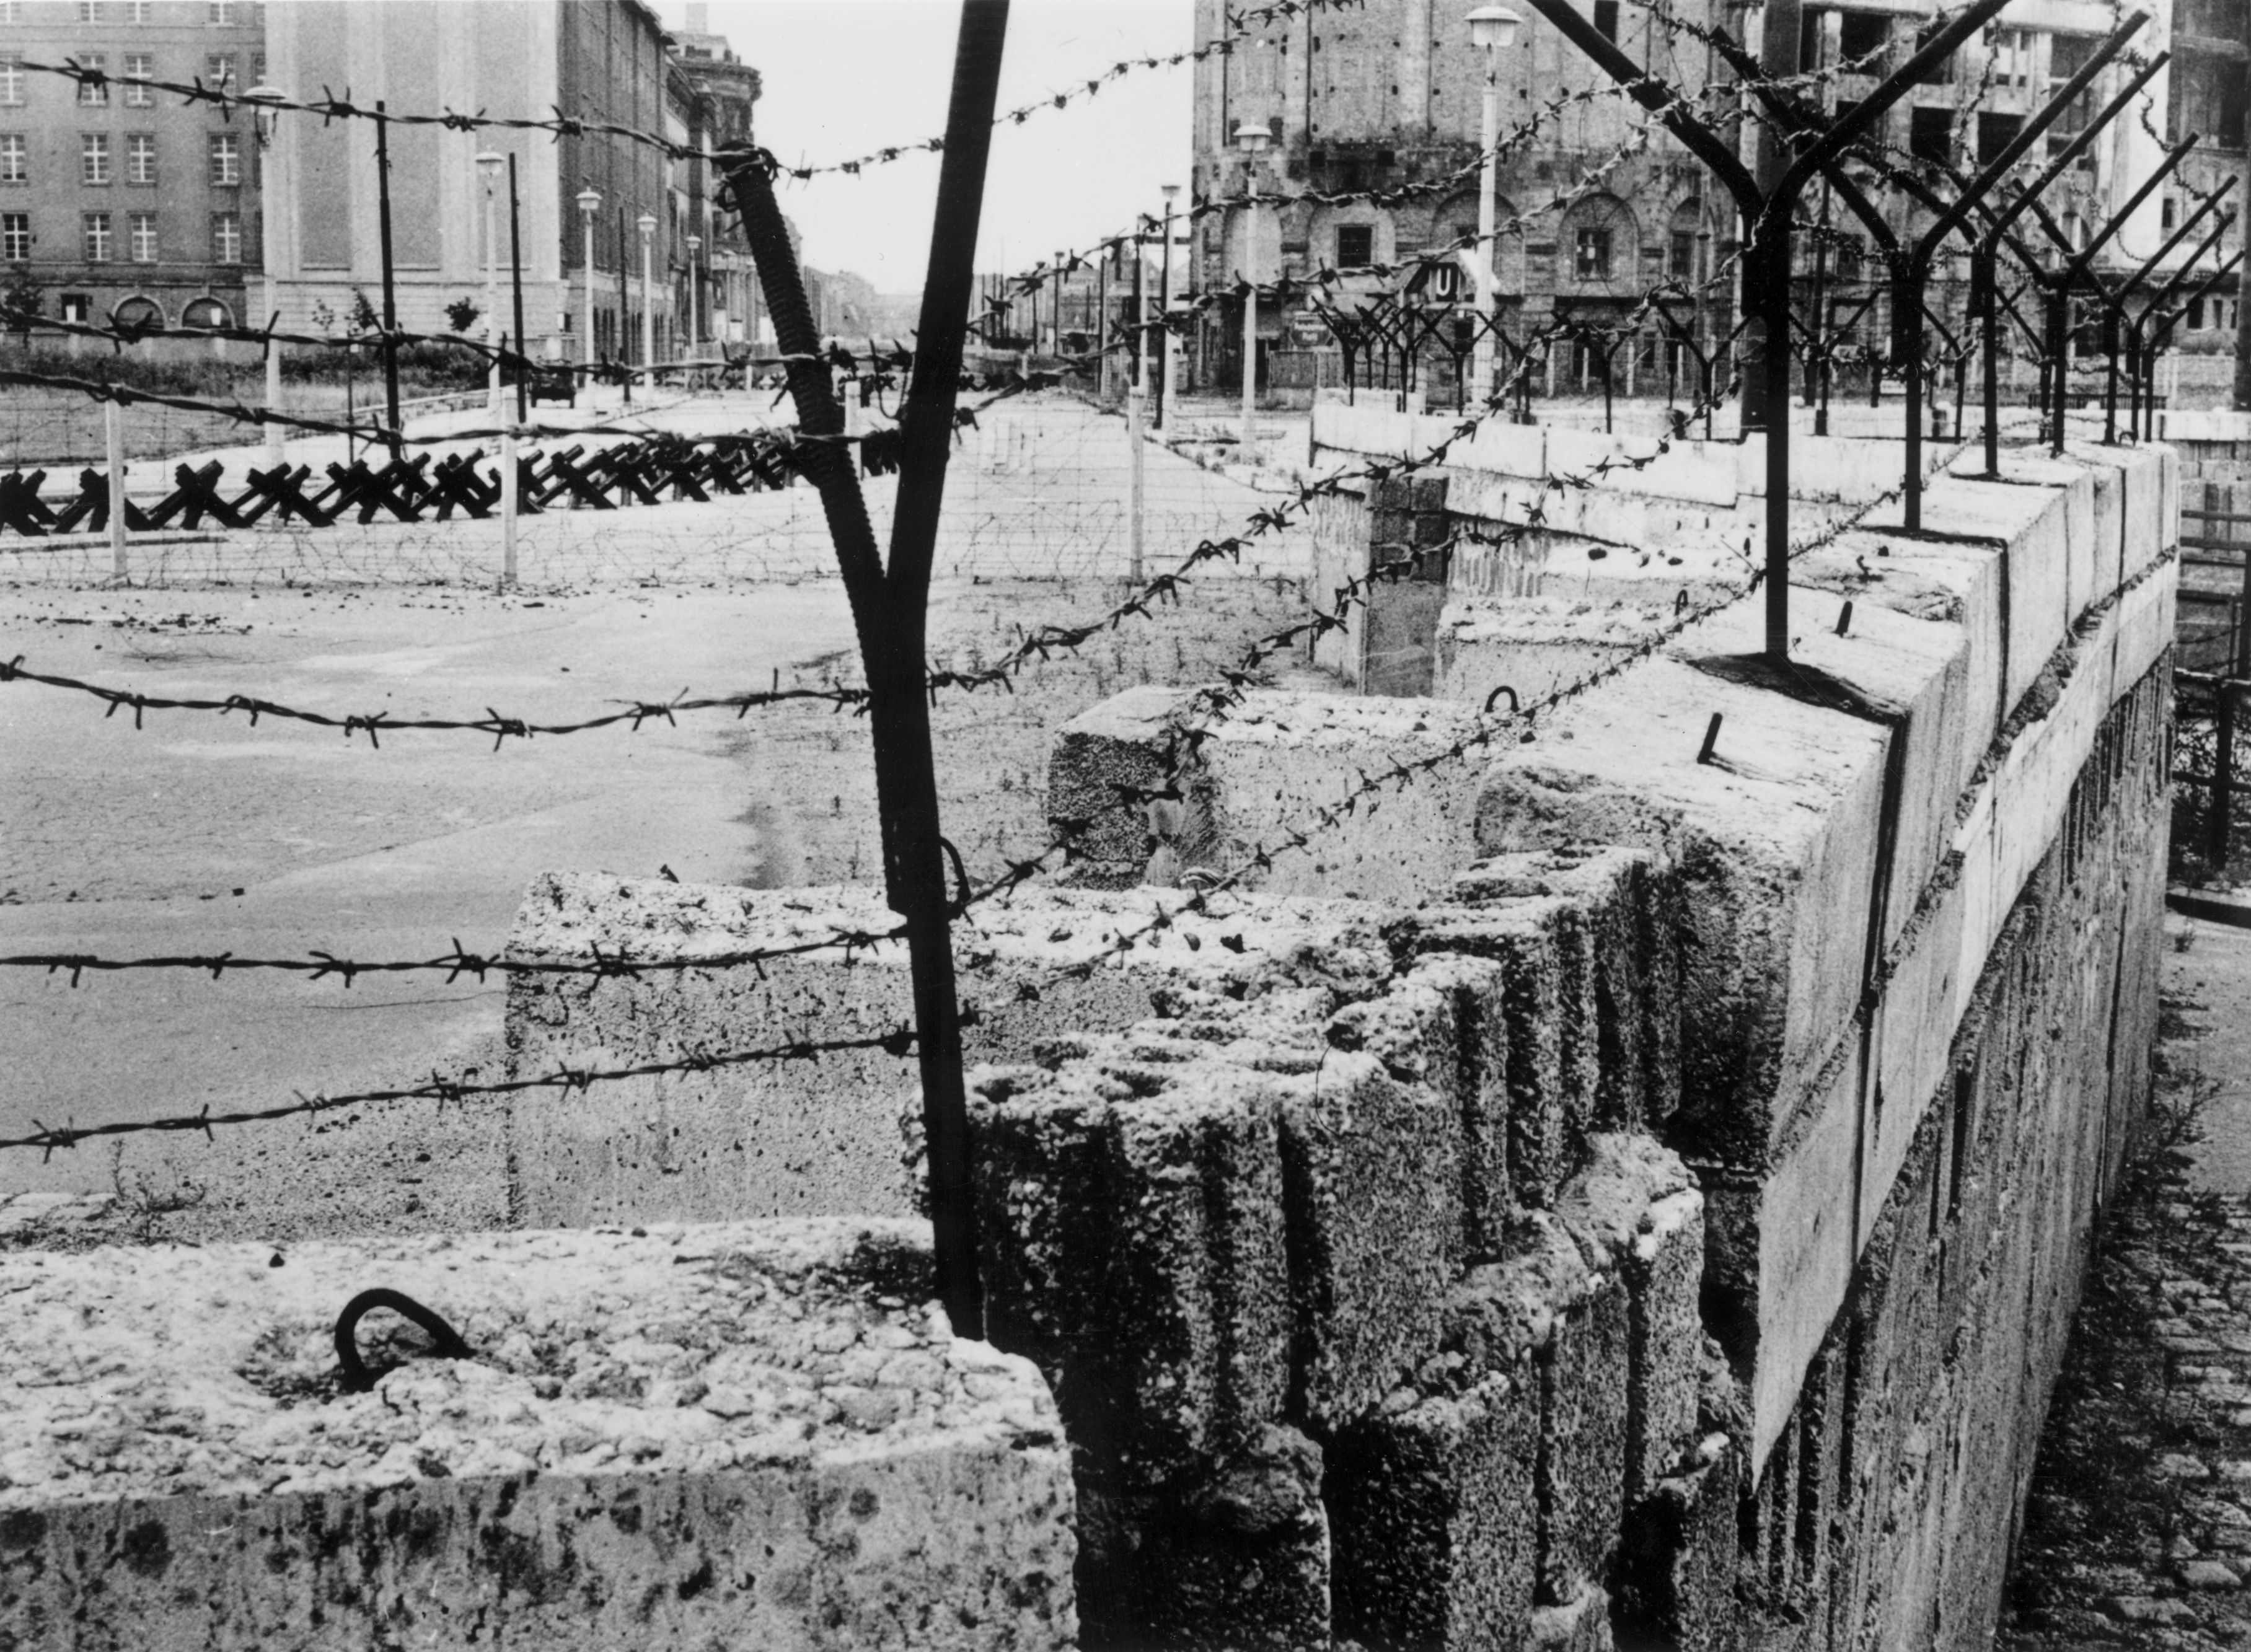 Potsdamer Platz, nel 1961. Si nota il particolare del filo spinato posto sopra il muro, alimentato con corrente ad alta tensione